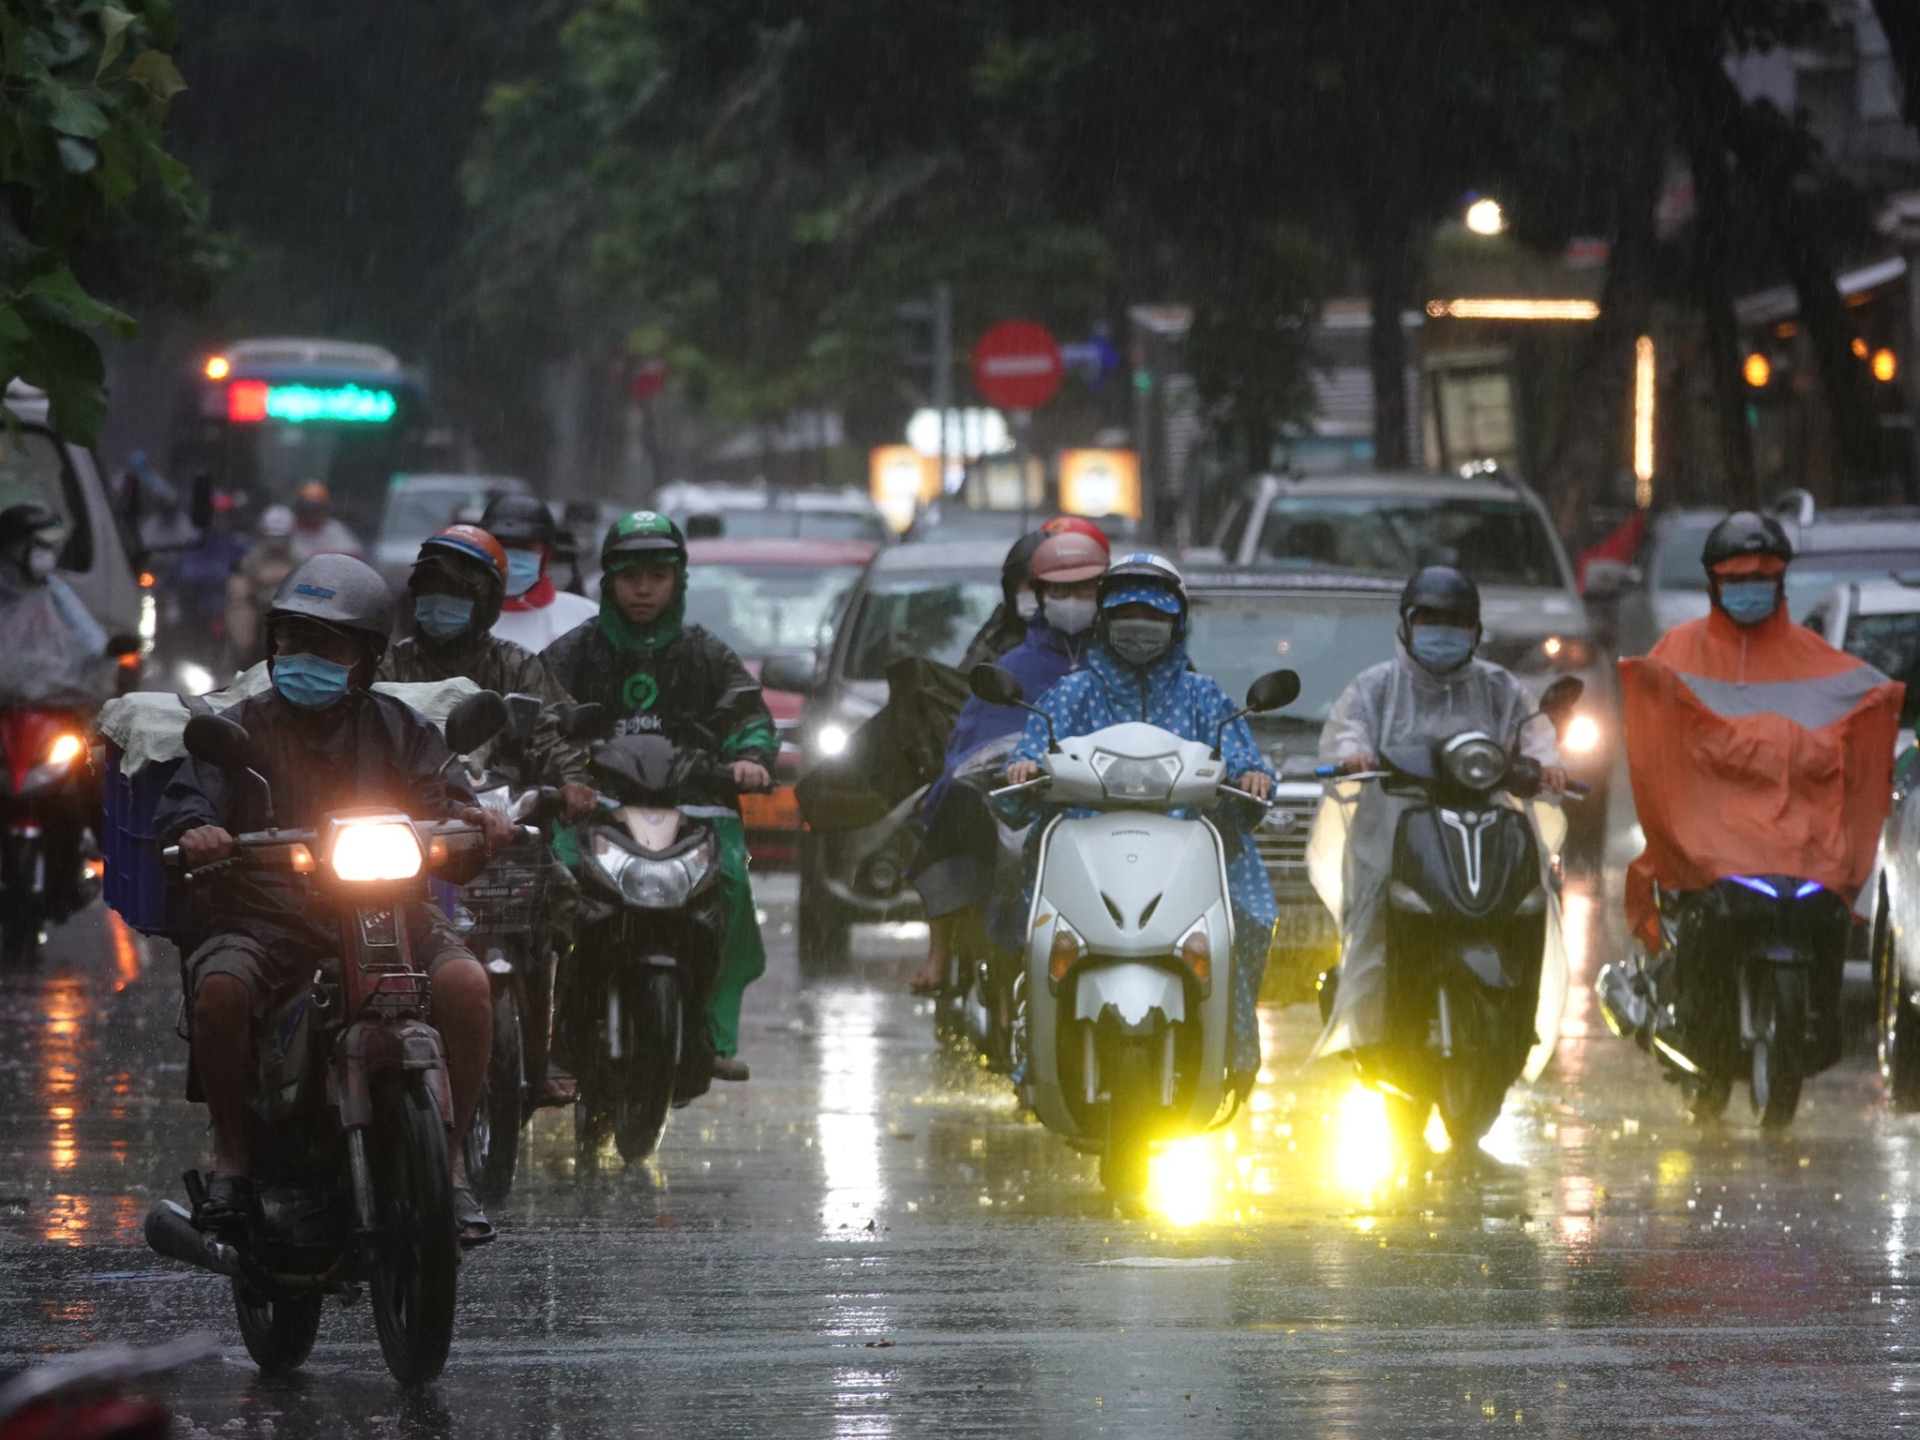 Sài Gòn vào mùa mưa, dân công sở nên làm gì để giờ tan tầm không phải chật vật về nhà? - ảnh 2